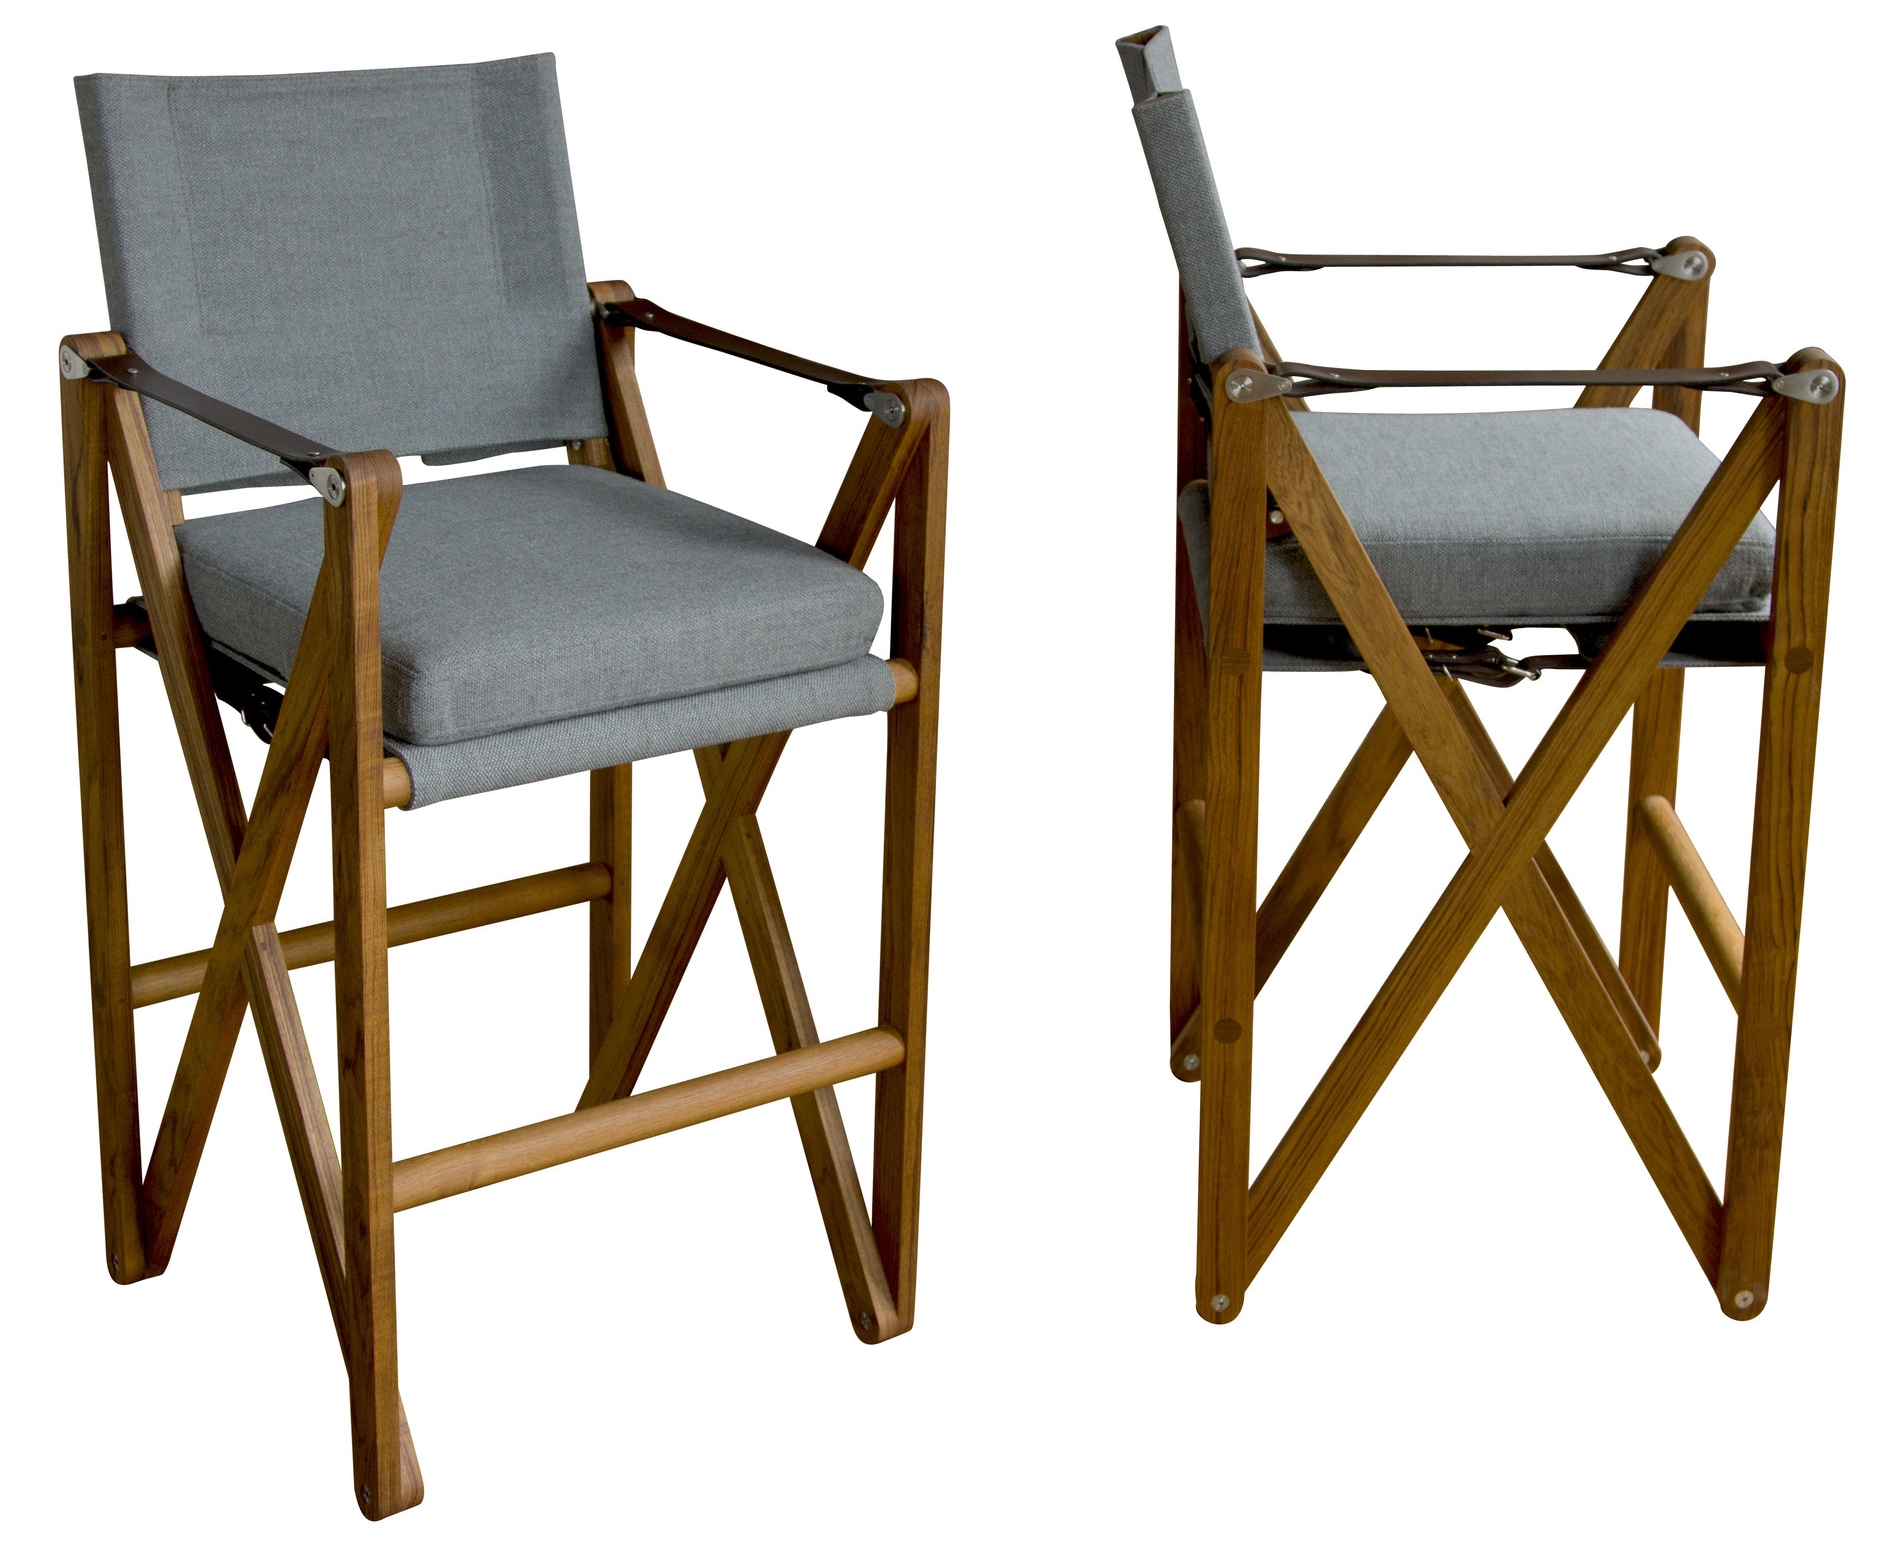 MacLaren Bar Chair - Wide / Outdoor